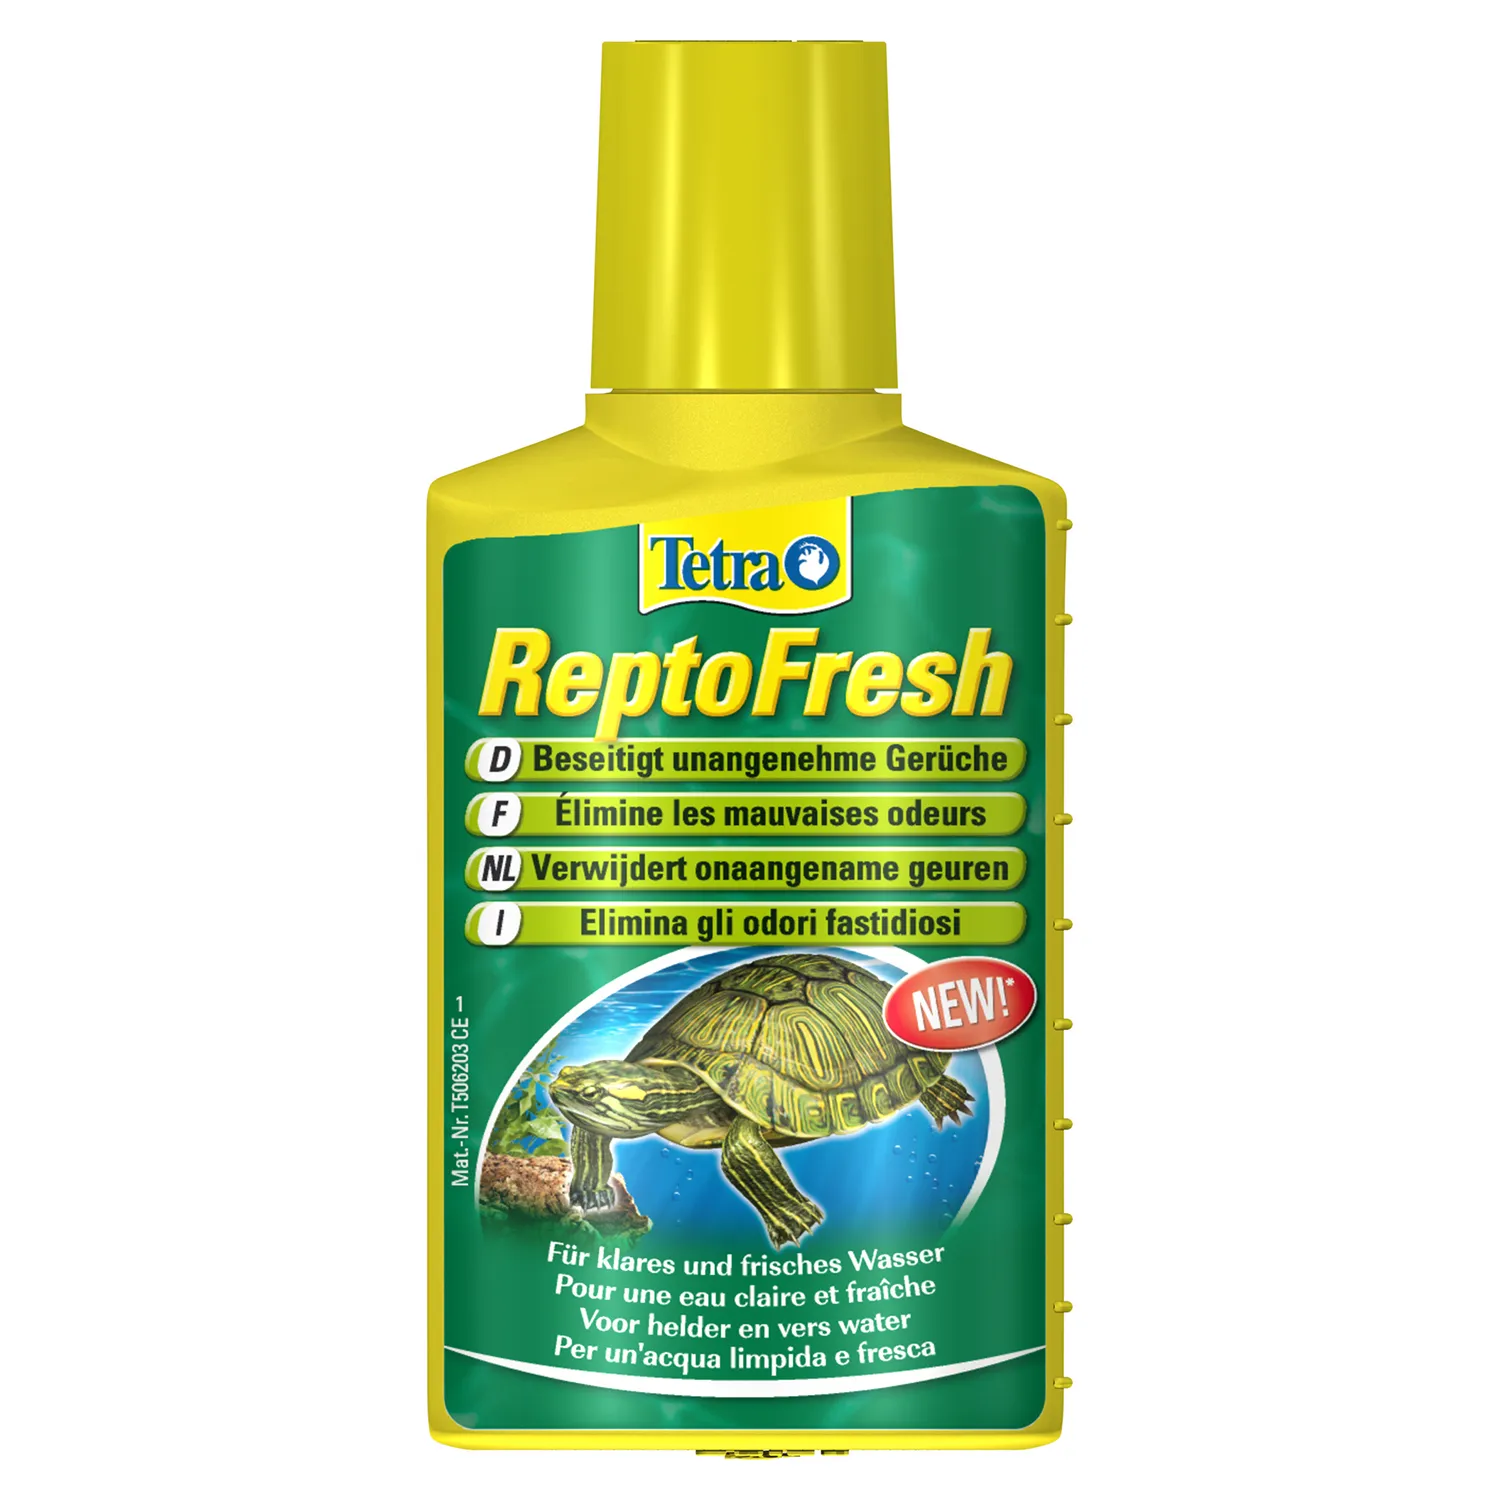 Tetra ReptoFresh средство для очистки воды в аквариуме с черепахами 100 мл СКИДКА 40%